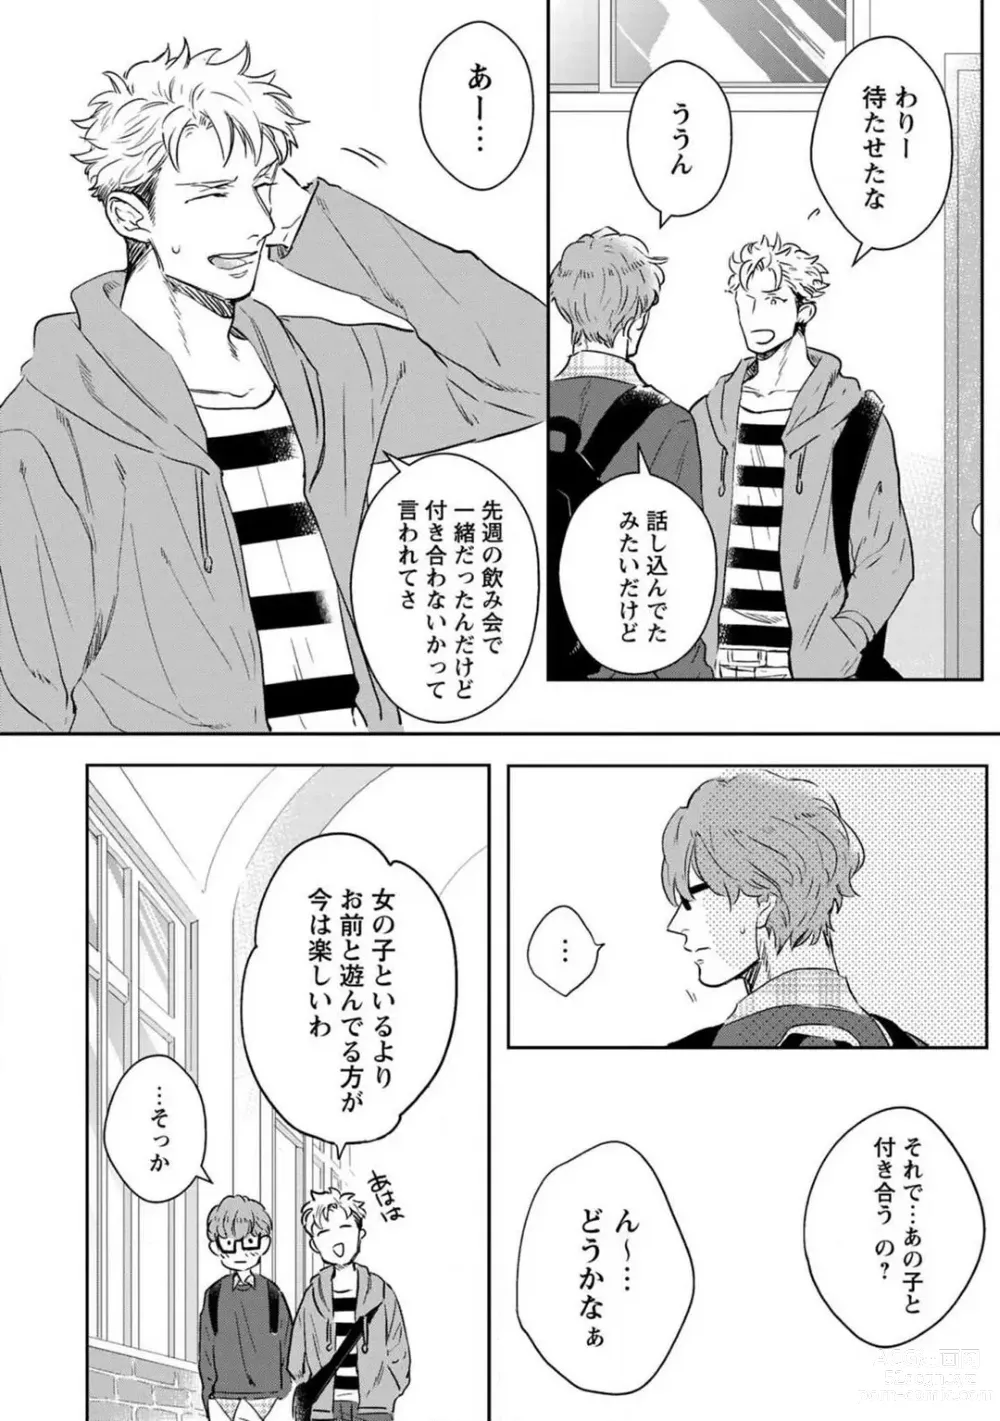 Page 5 of manga Kimi no Shiranai xx